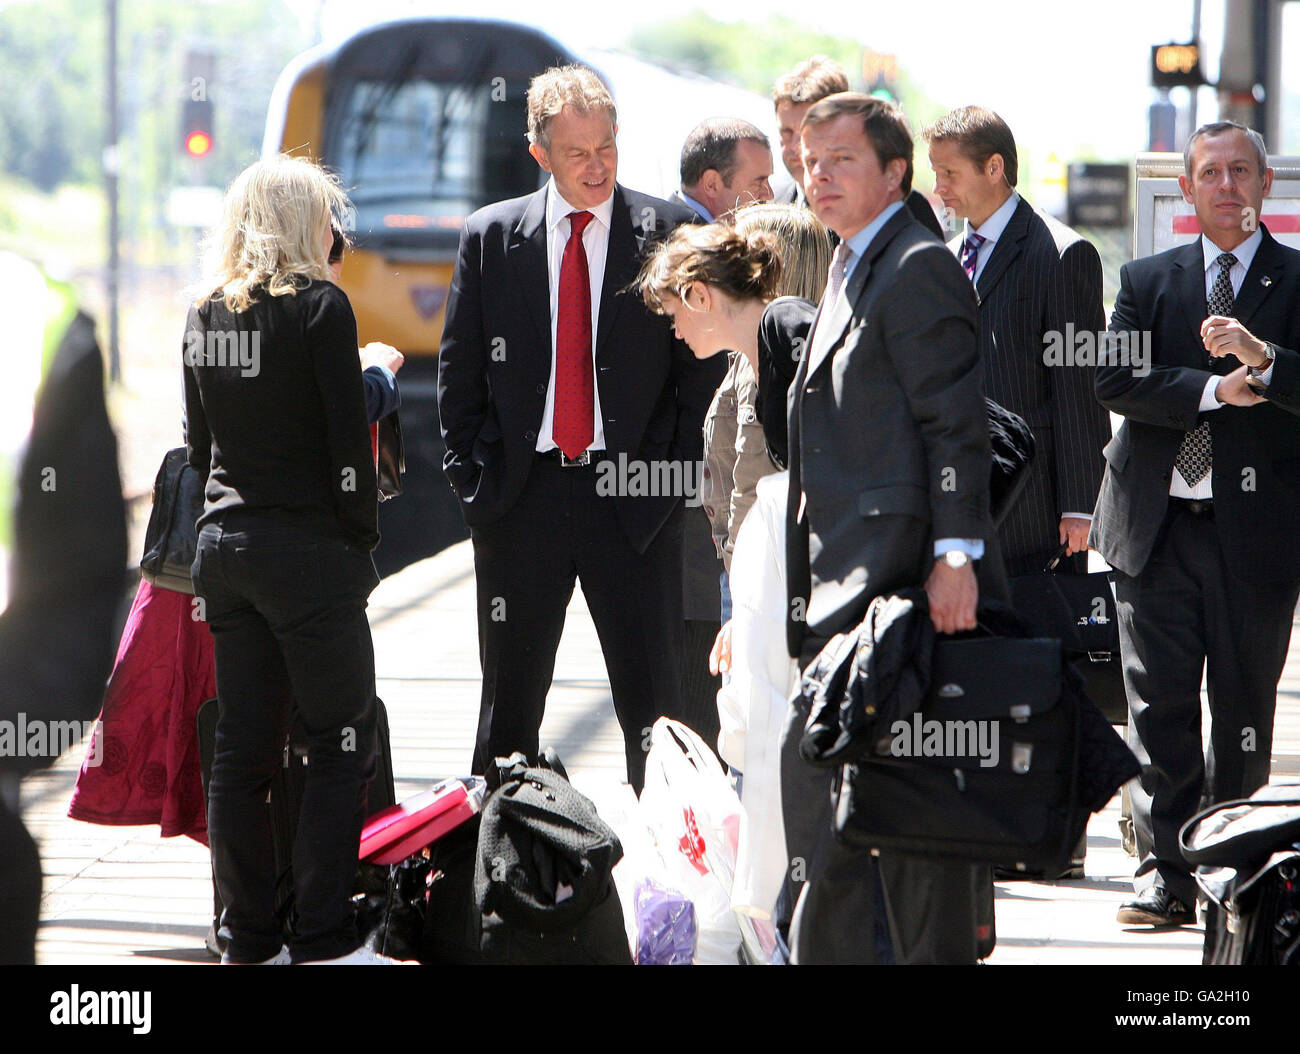 Tony Blair quitte la gare de Darlington sur le chemin du retour à Londres, après avoir passé du temps chez Sedgefield. Banque D'Images